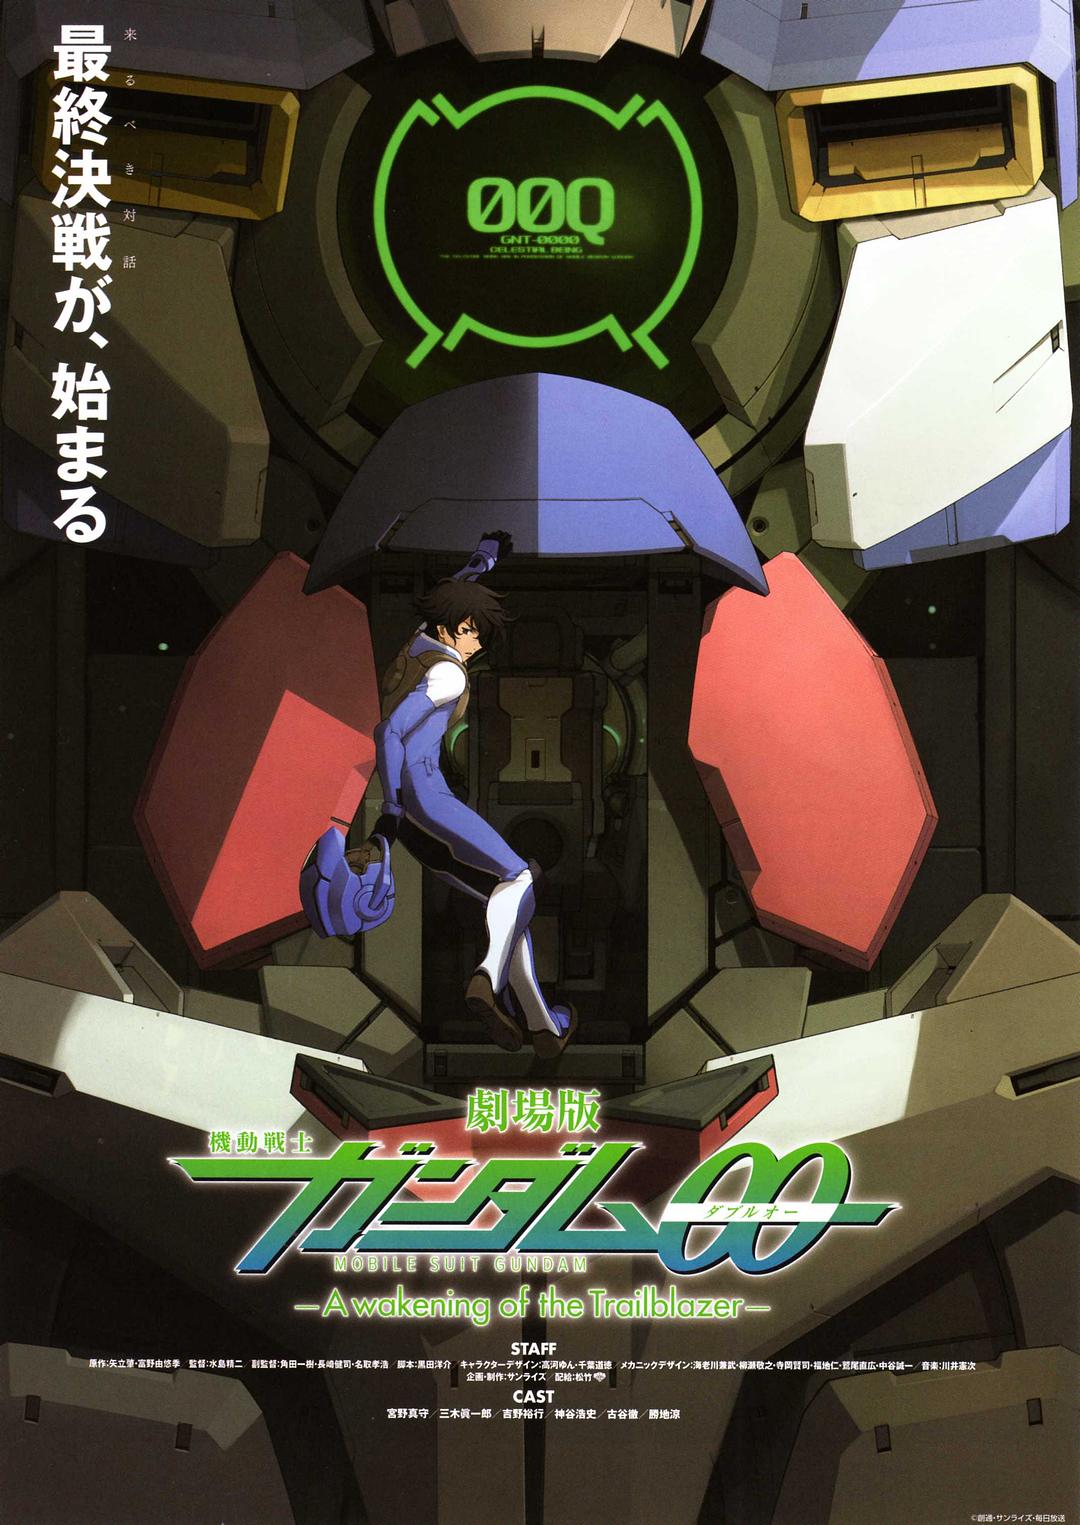 机动战士高达 剧场版先驱者的觉醒 在线影院免费高清观看 年豆瓣高分动画电影 Mobile Suit Gundam Film A wakening of the